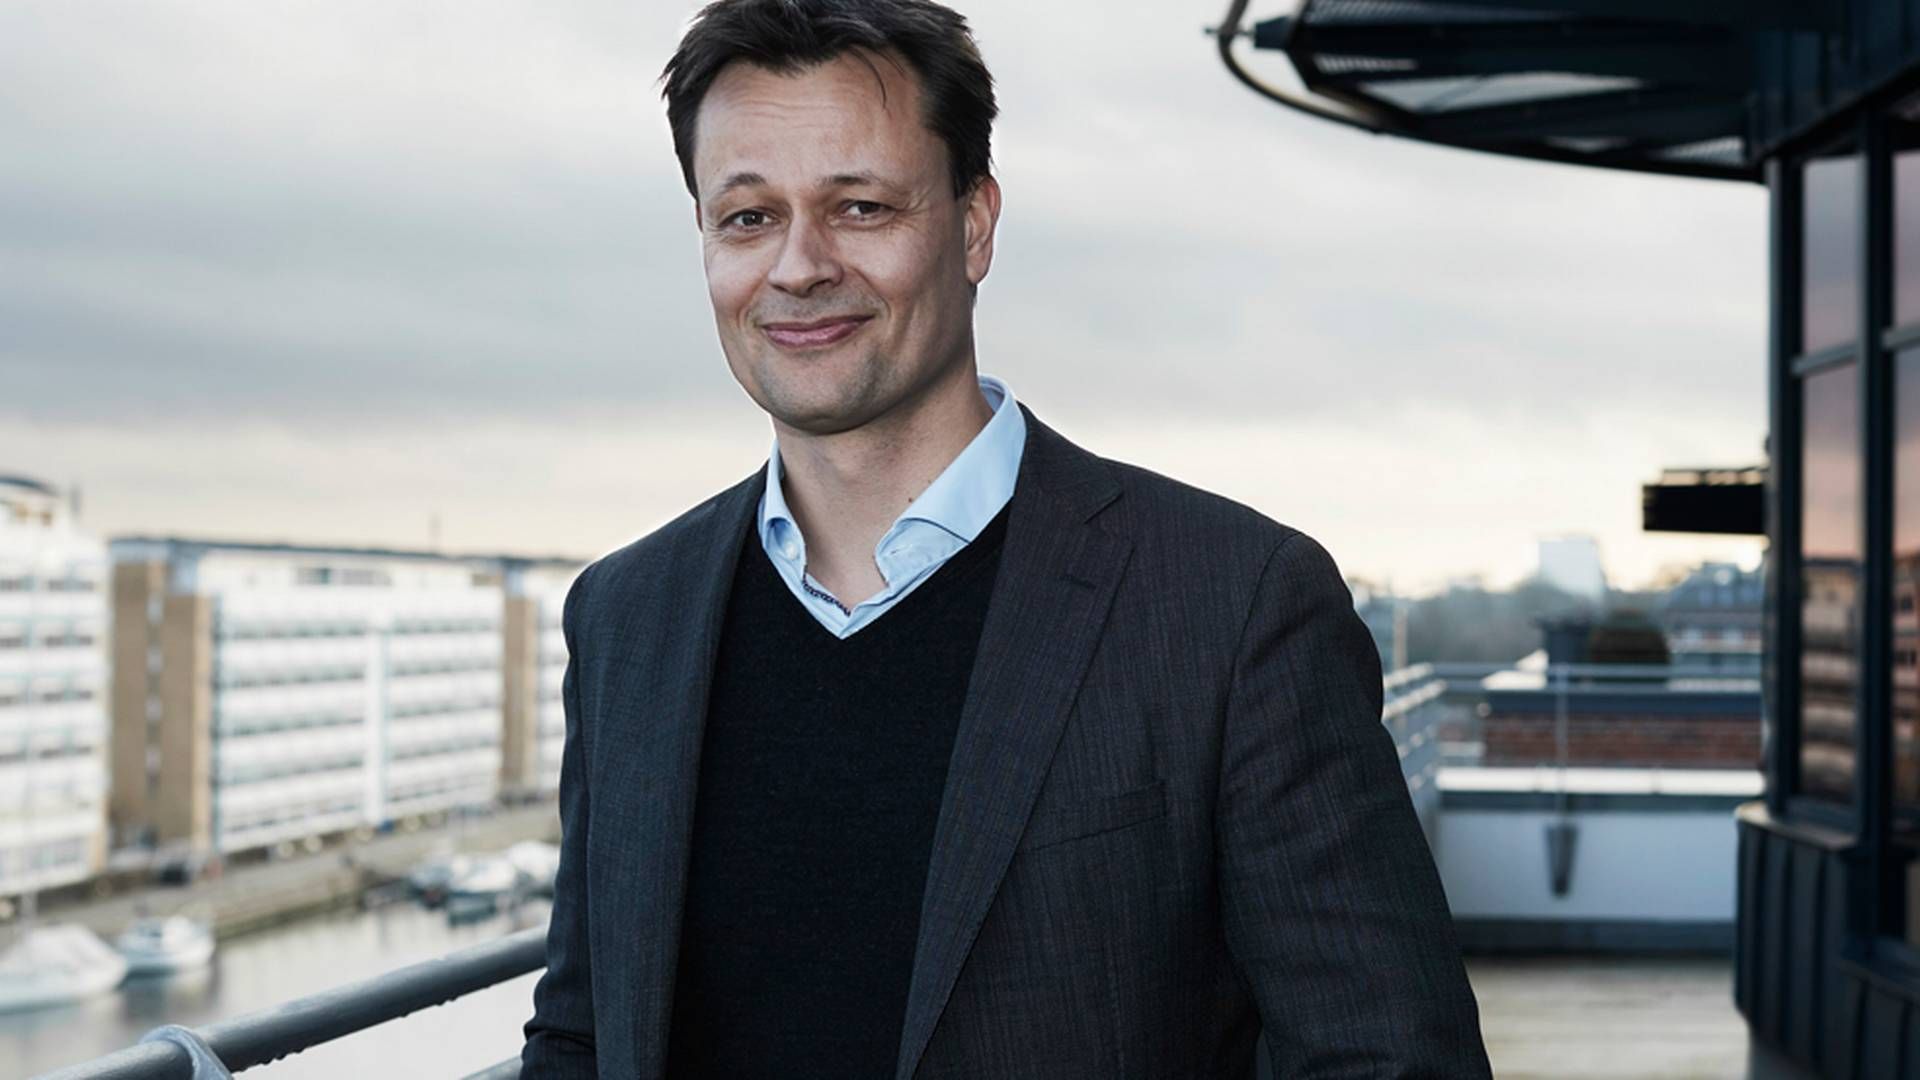 Adm. direktør for E-boks, Ulrik Falkner Thagesen. | Foto: PR/E-boks